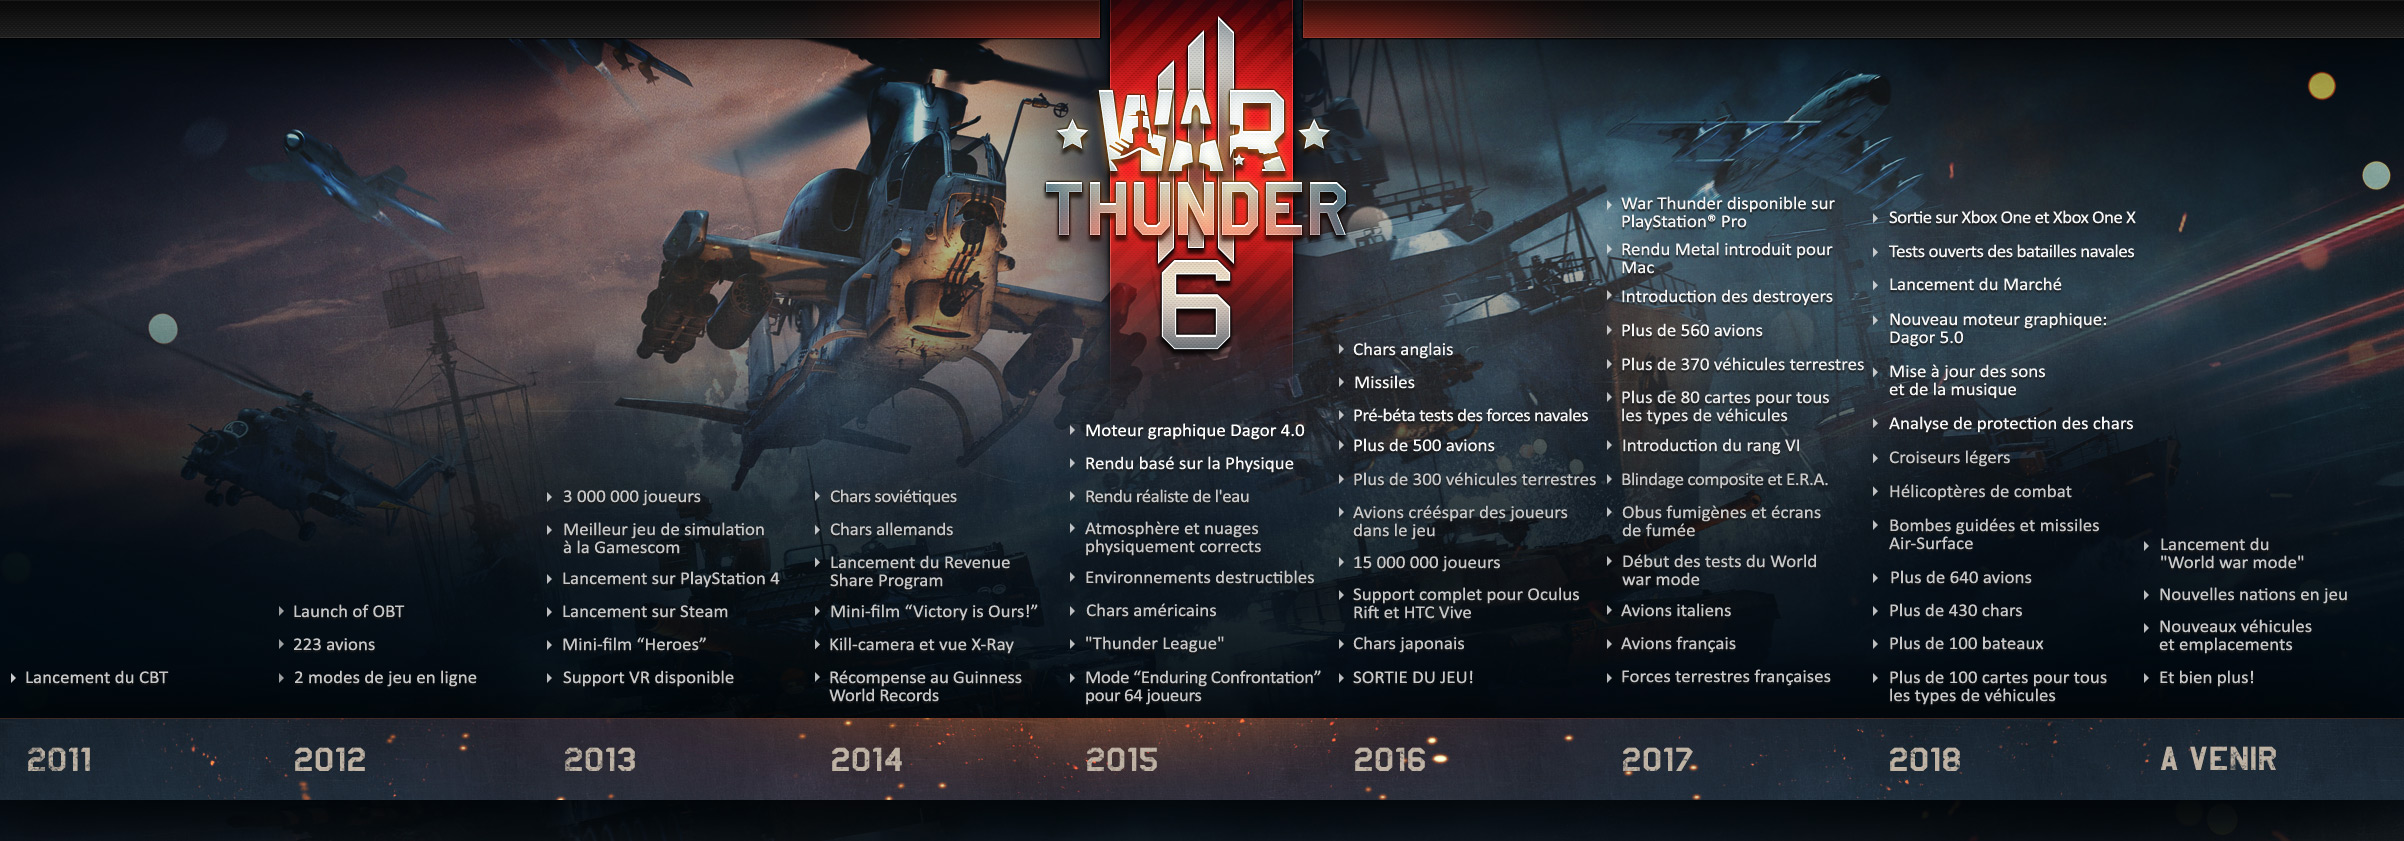 war thunder update release date